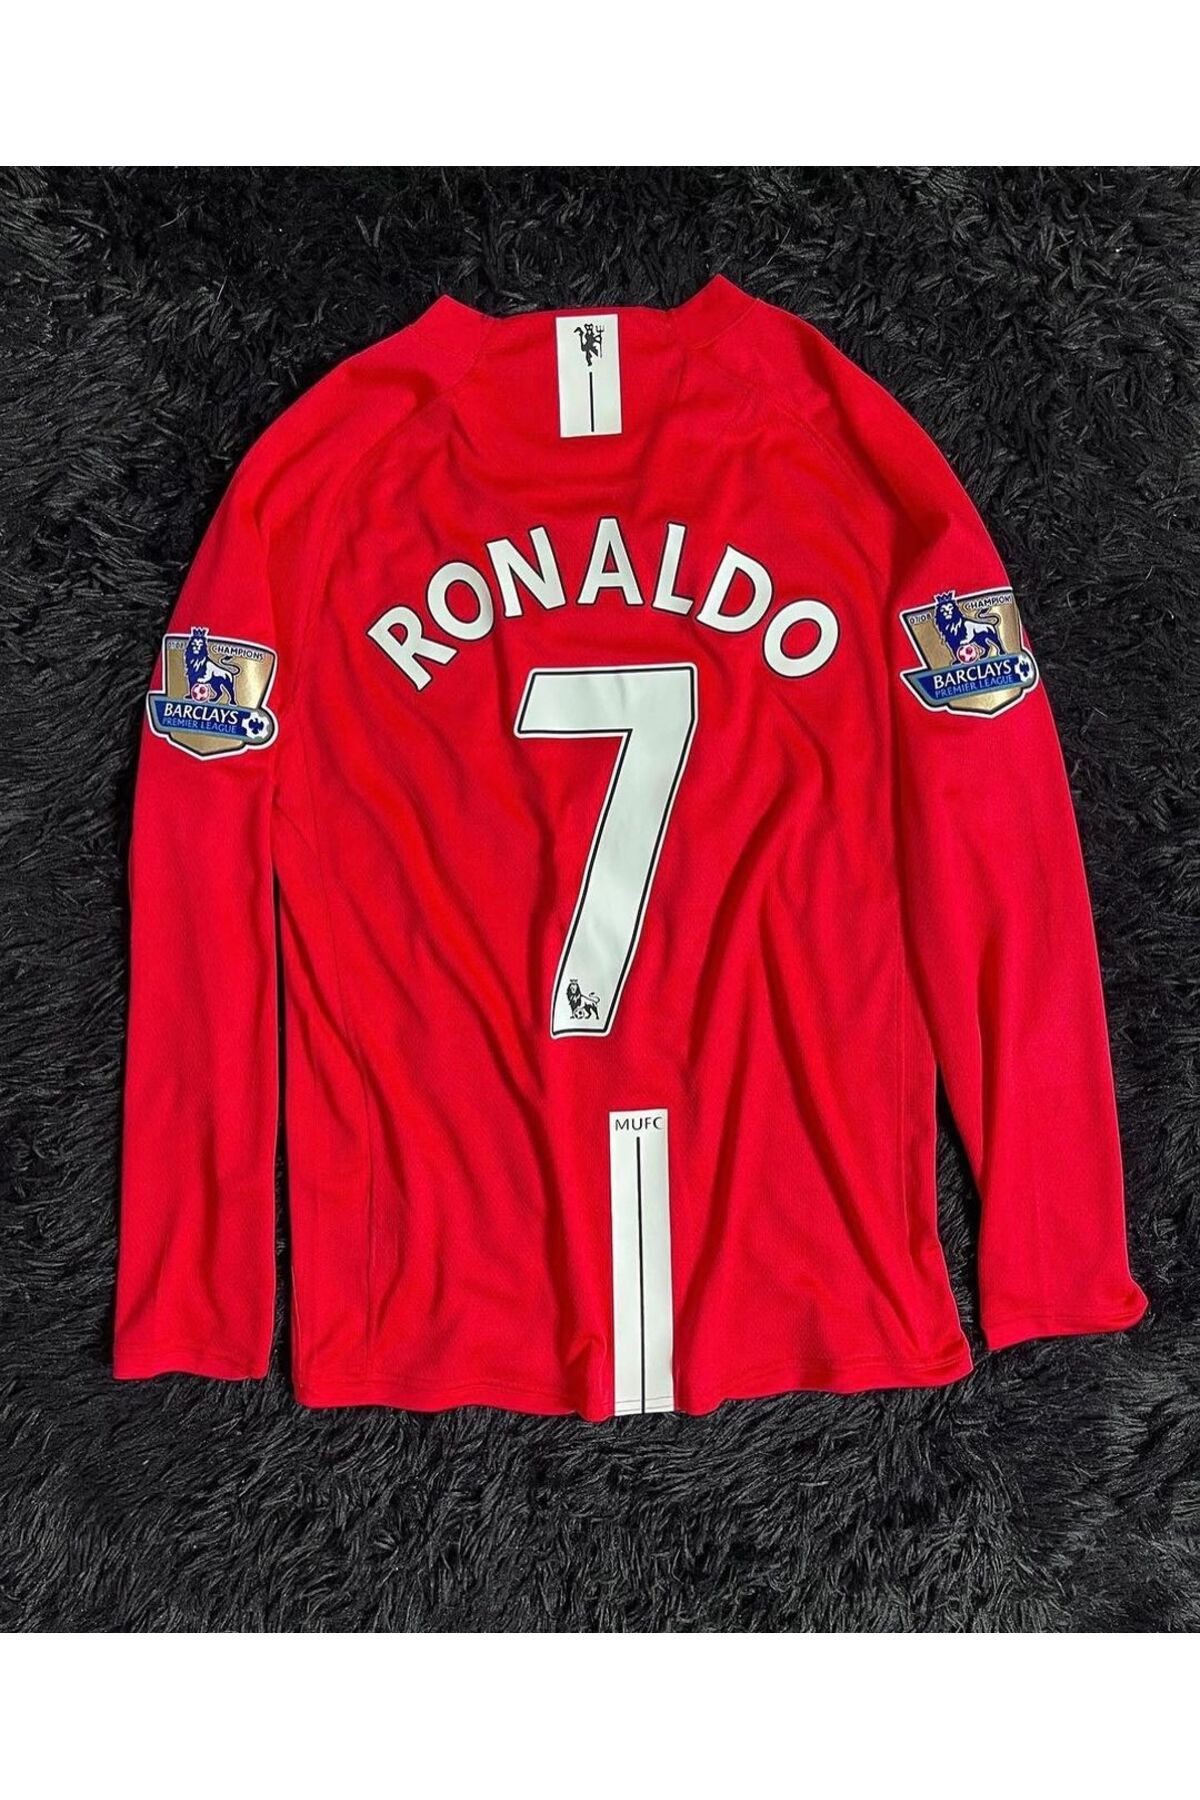 Alaturka Mix Ronaldo Uzun Kollu Kırmızı 2008 Şampiyonlar Ligi Retro Manchester United Forması